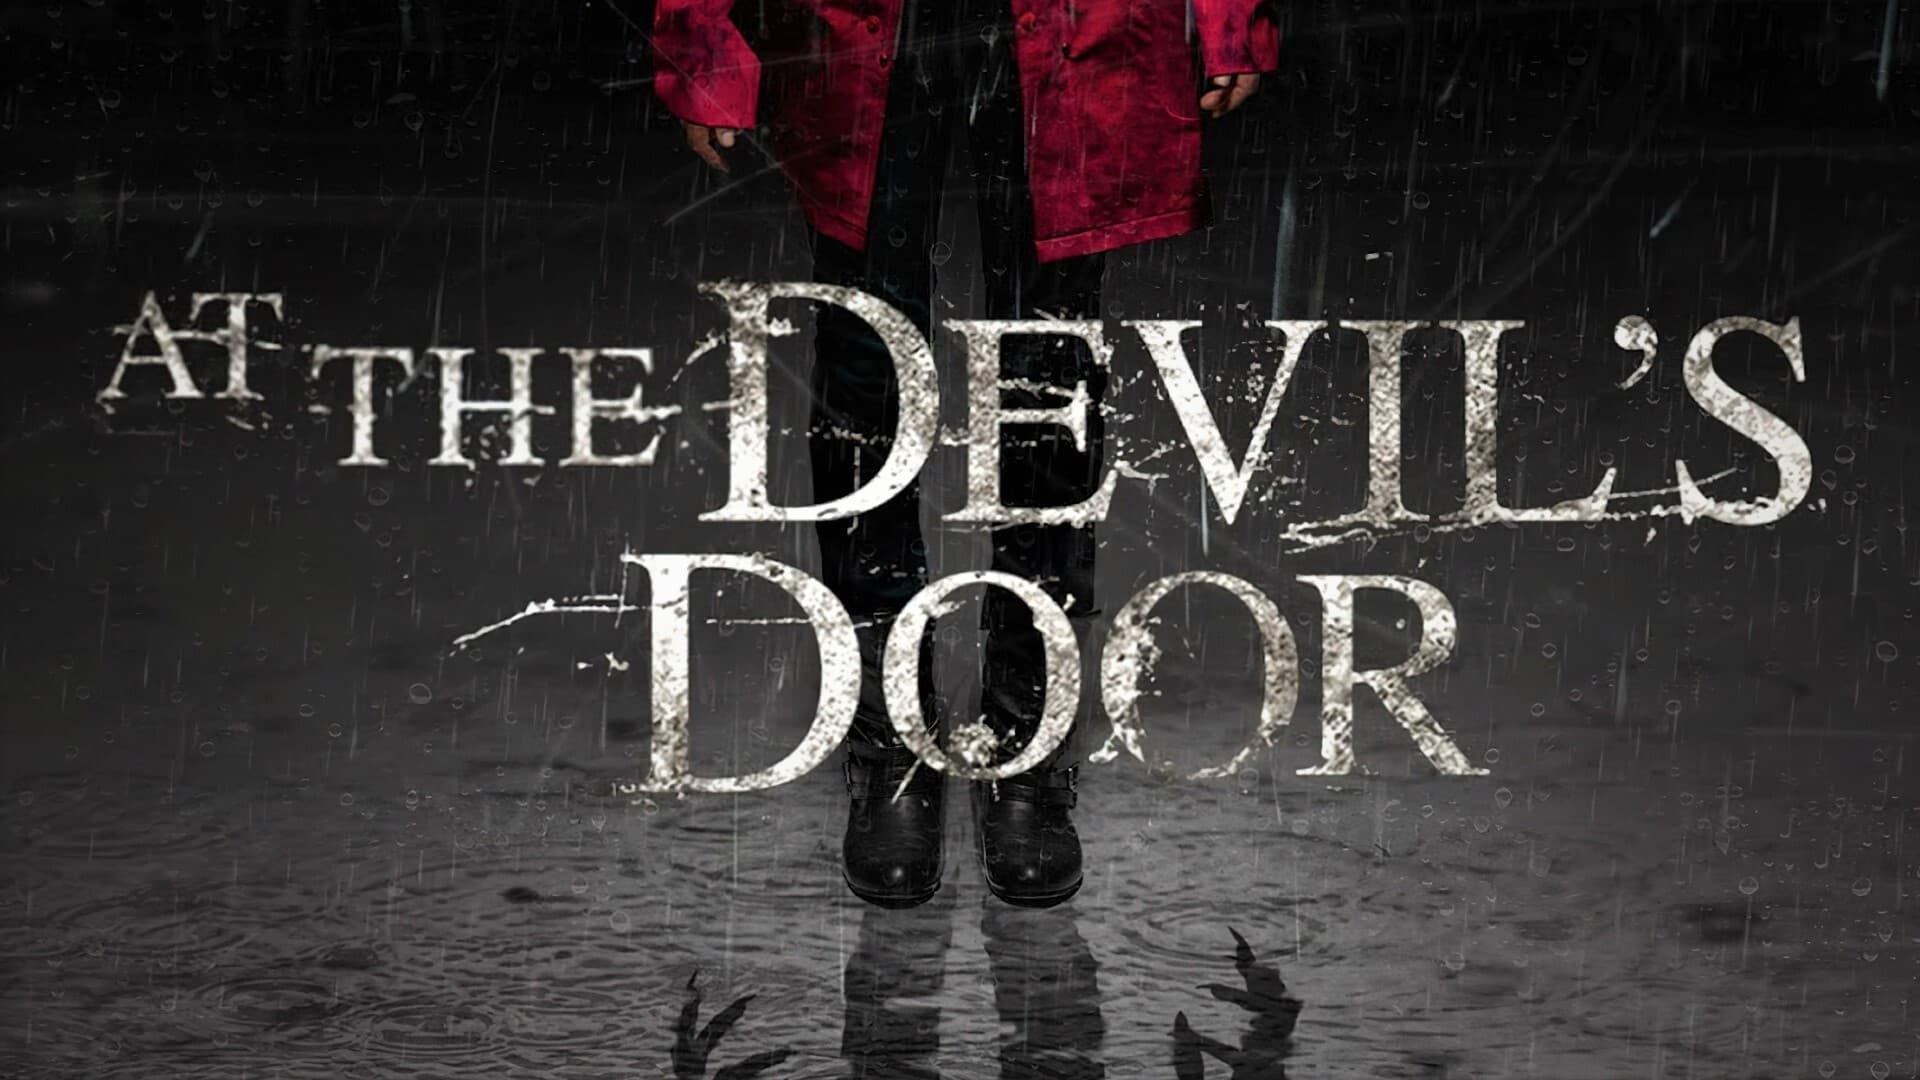 At the Devil's Door (2014)